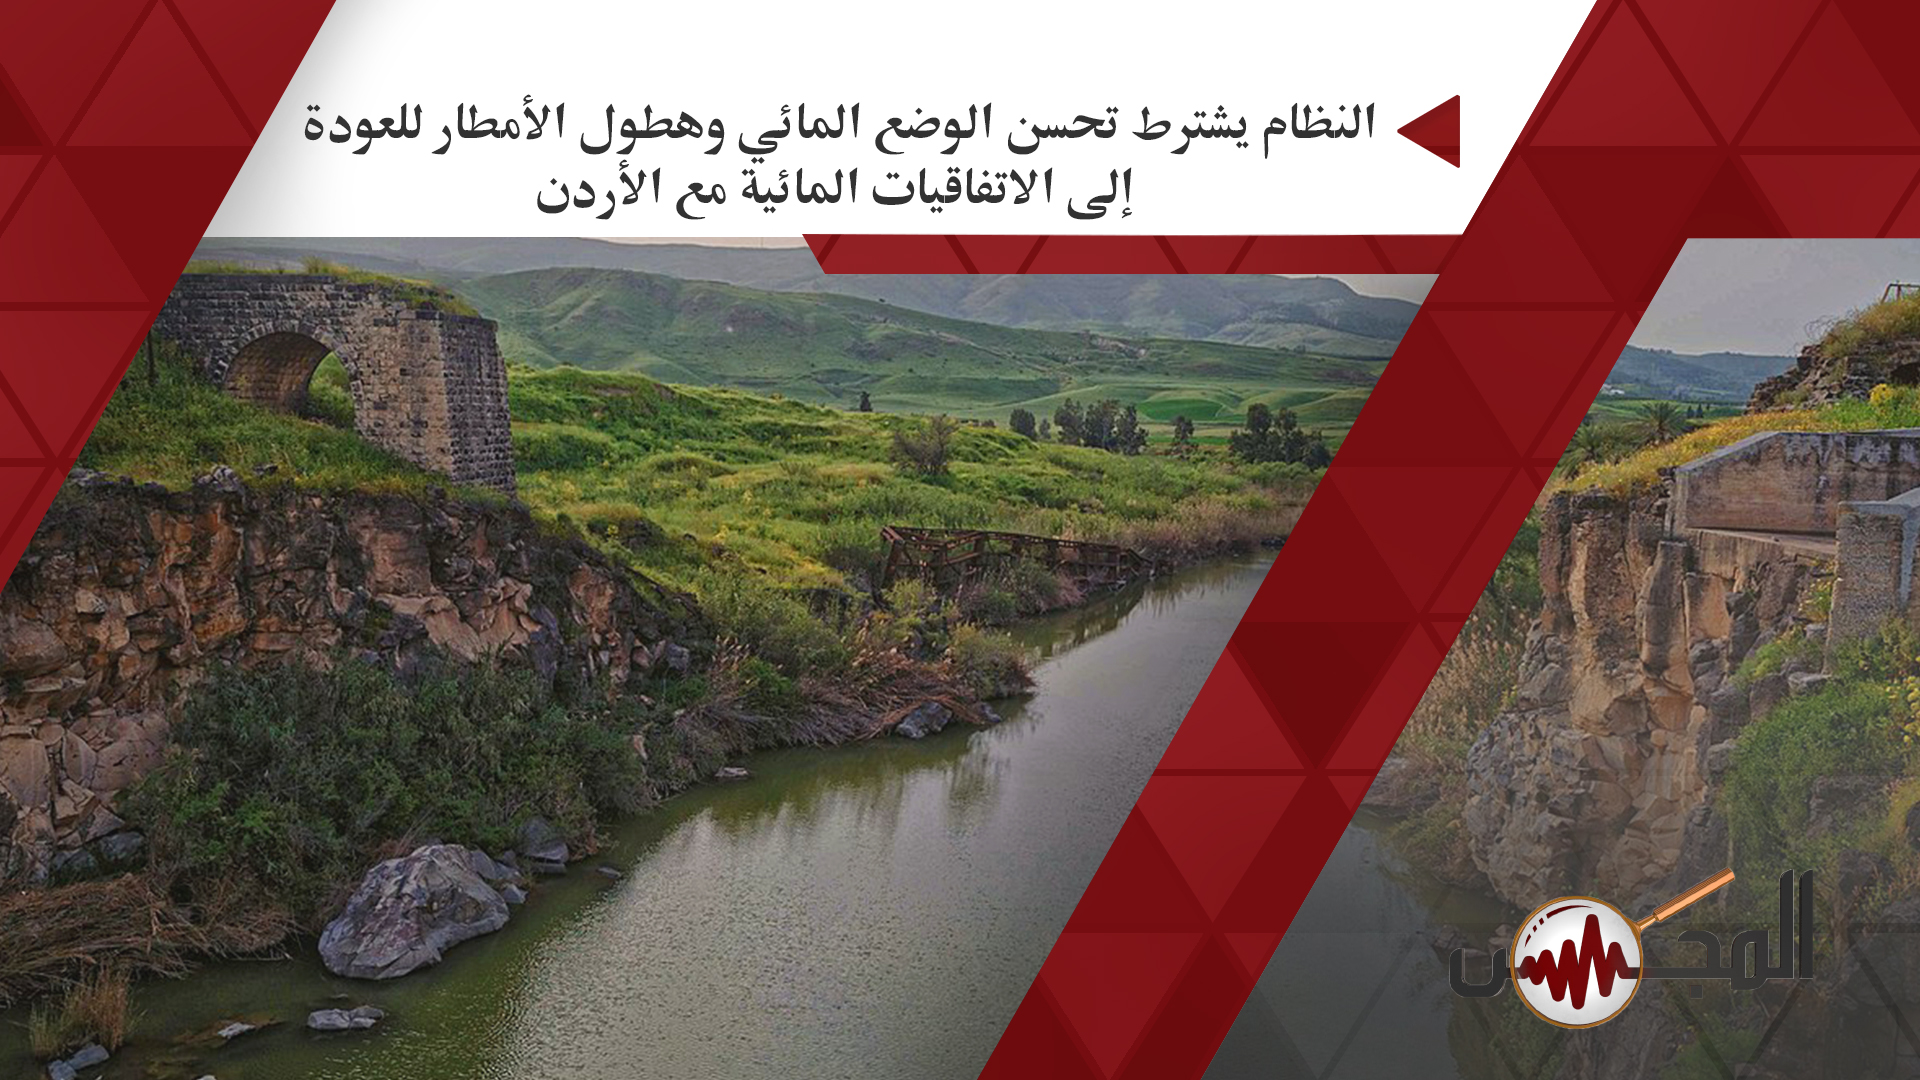 النظام يشترط تحسن الوضع المائي وهطول الأمطار للعودة إلى الاتفاقيات المائية مع الأردن